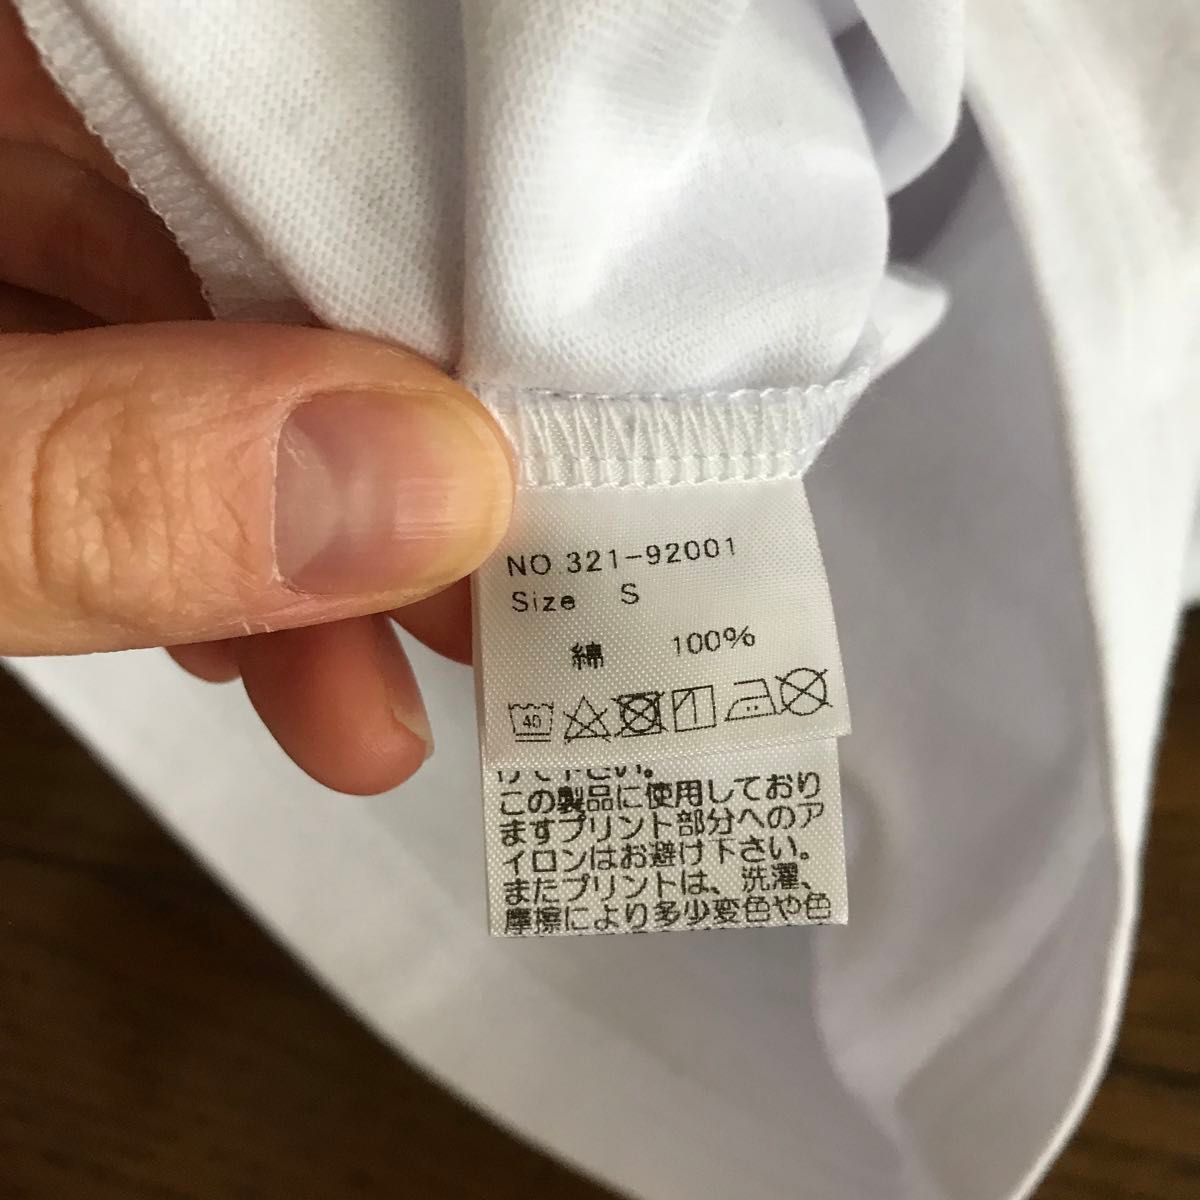 【未使用】ユニセックスS ランドリー福袋限定生産半袖白Tシャツ